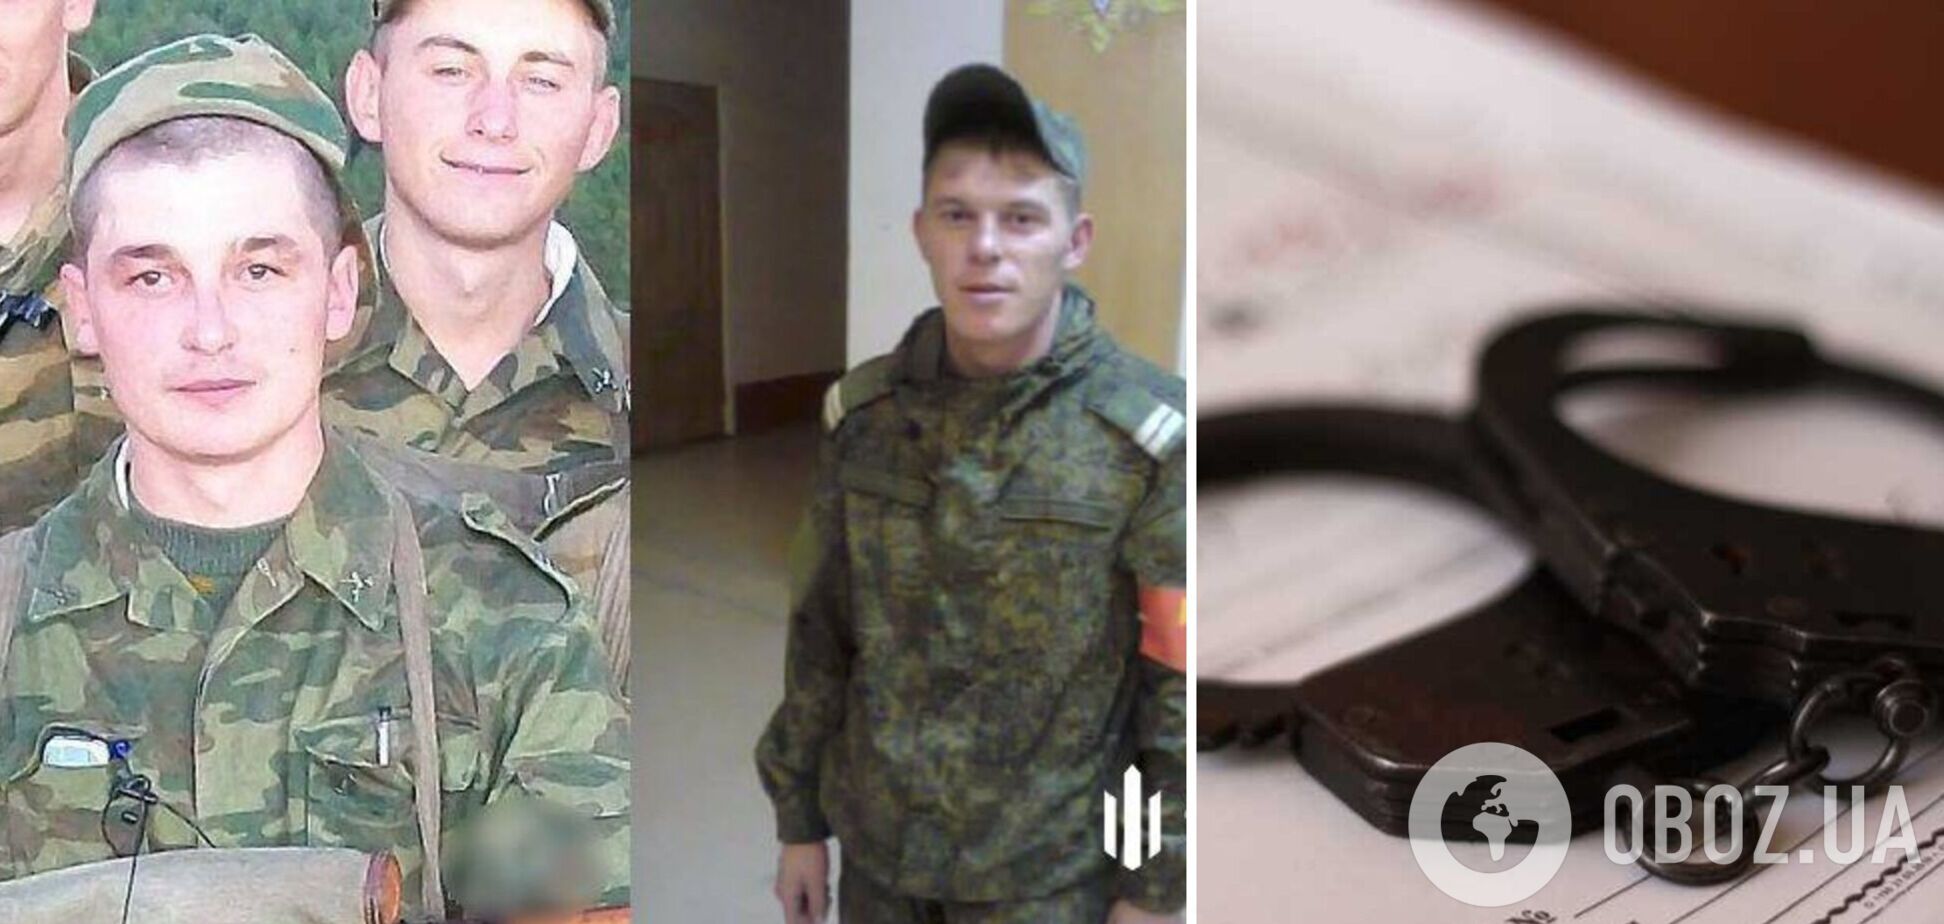 ГБР объявило подозрение двум российским оккупантам, терроризировавшим гражданских в Бородянке и Макарове. Фото